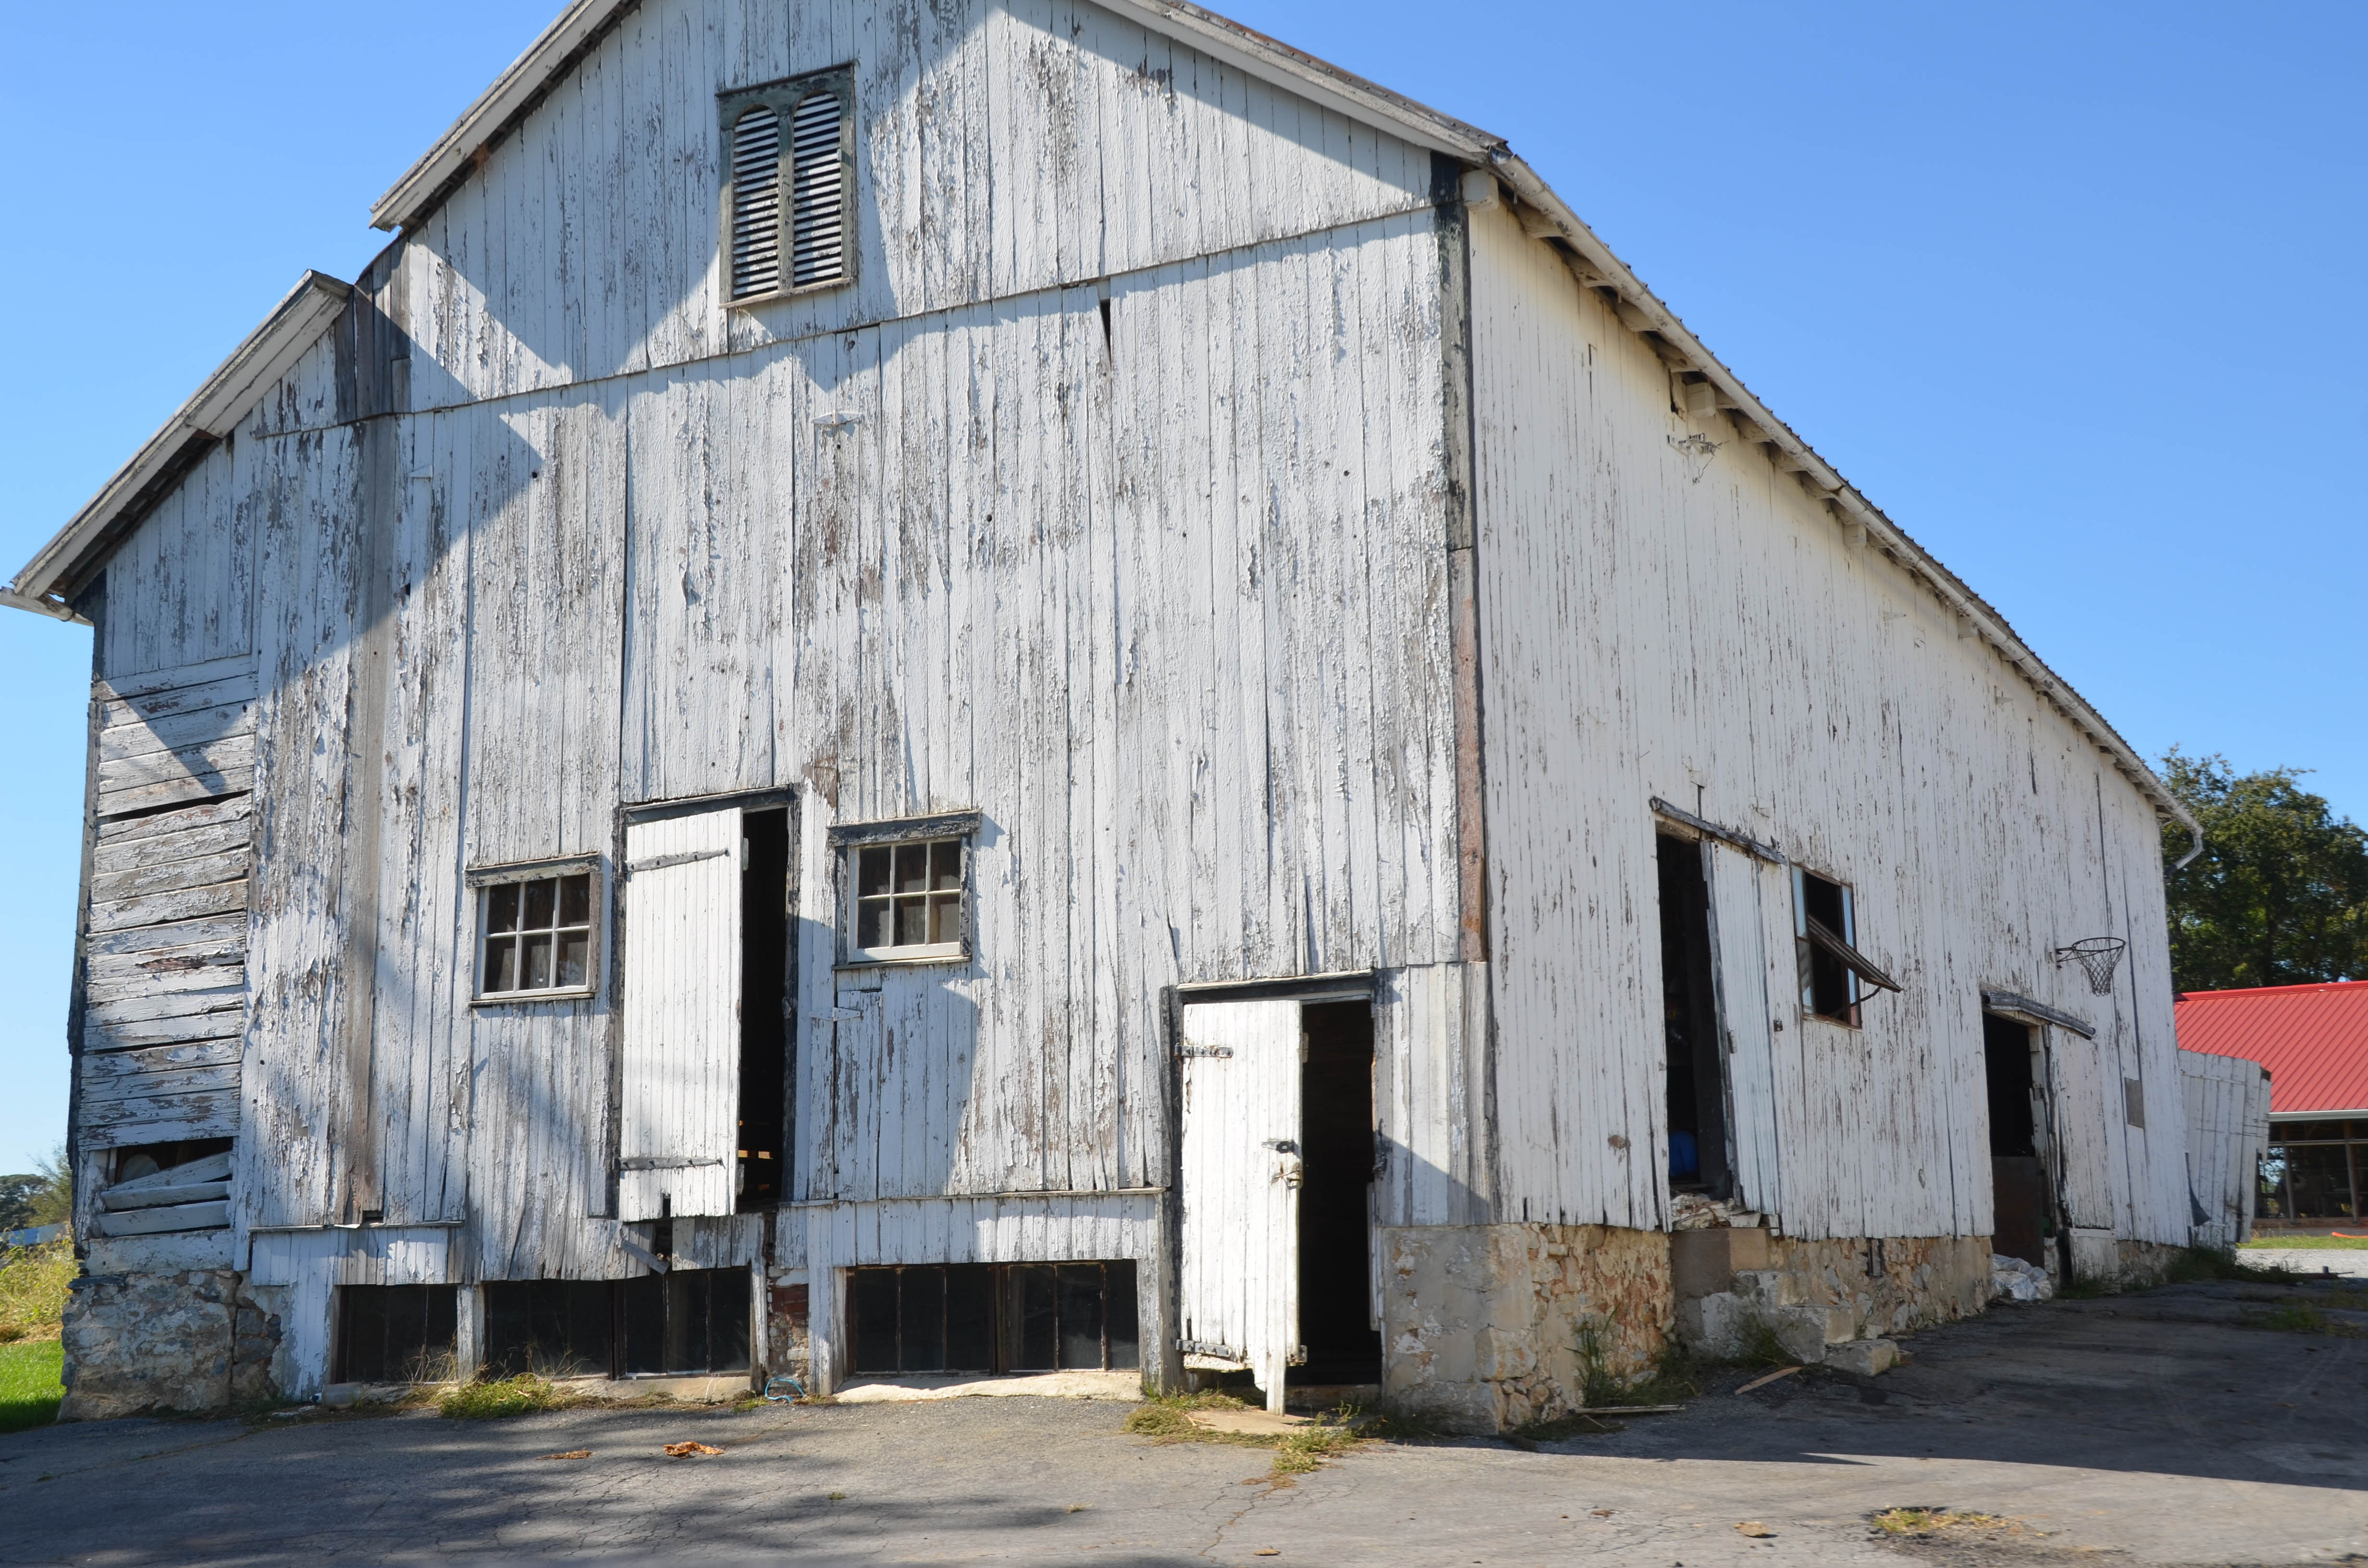 A barn in disrepair.